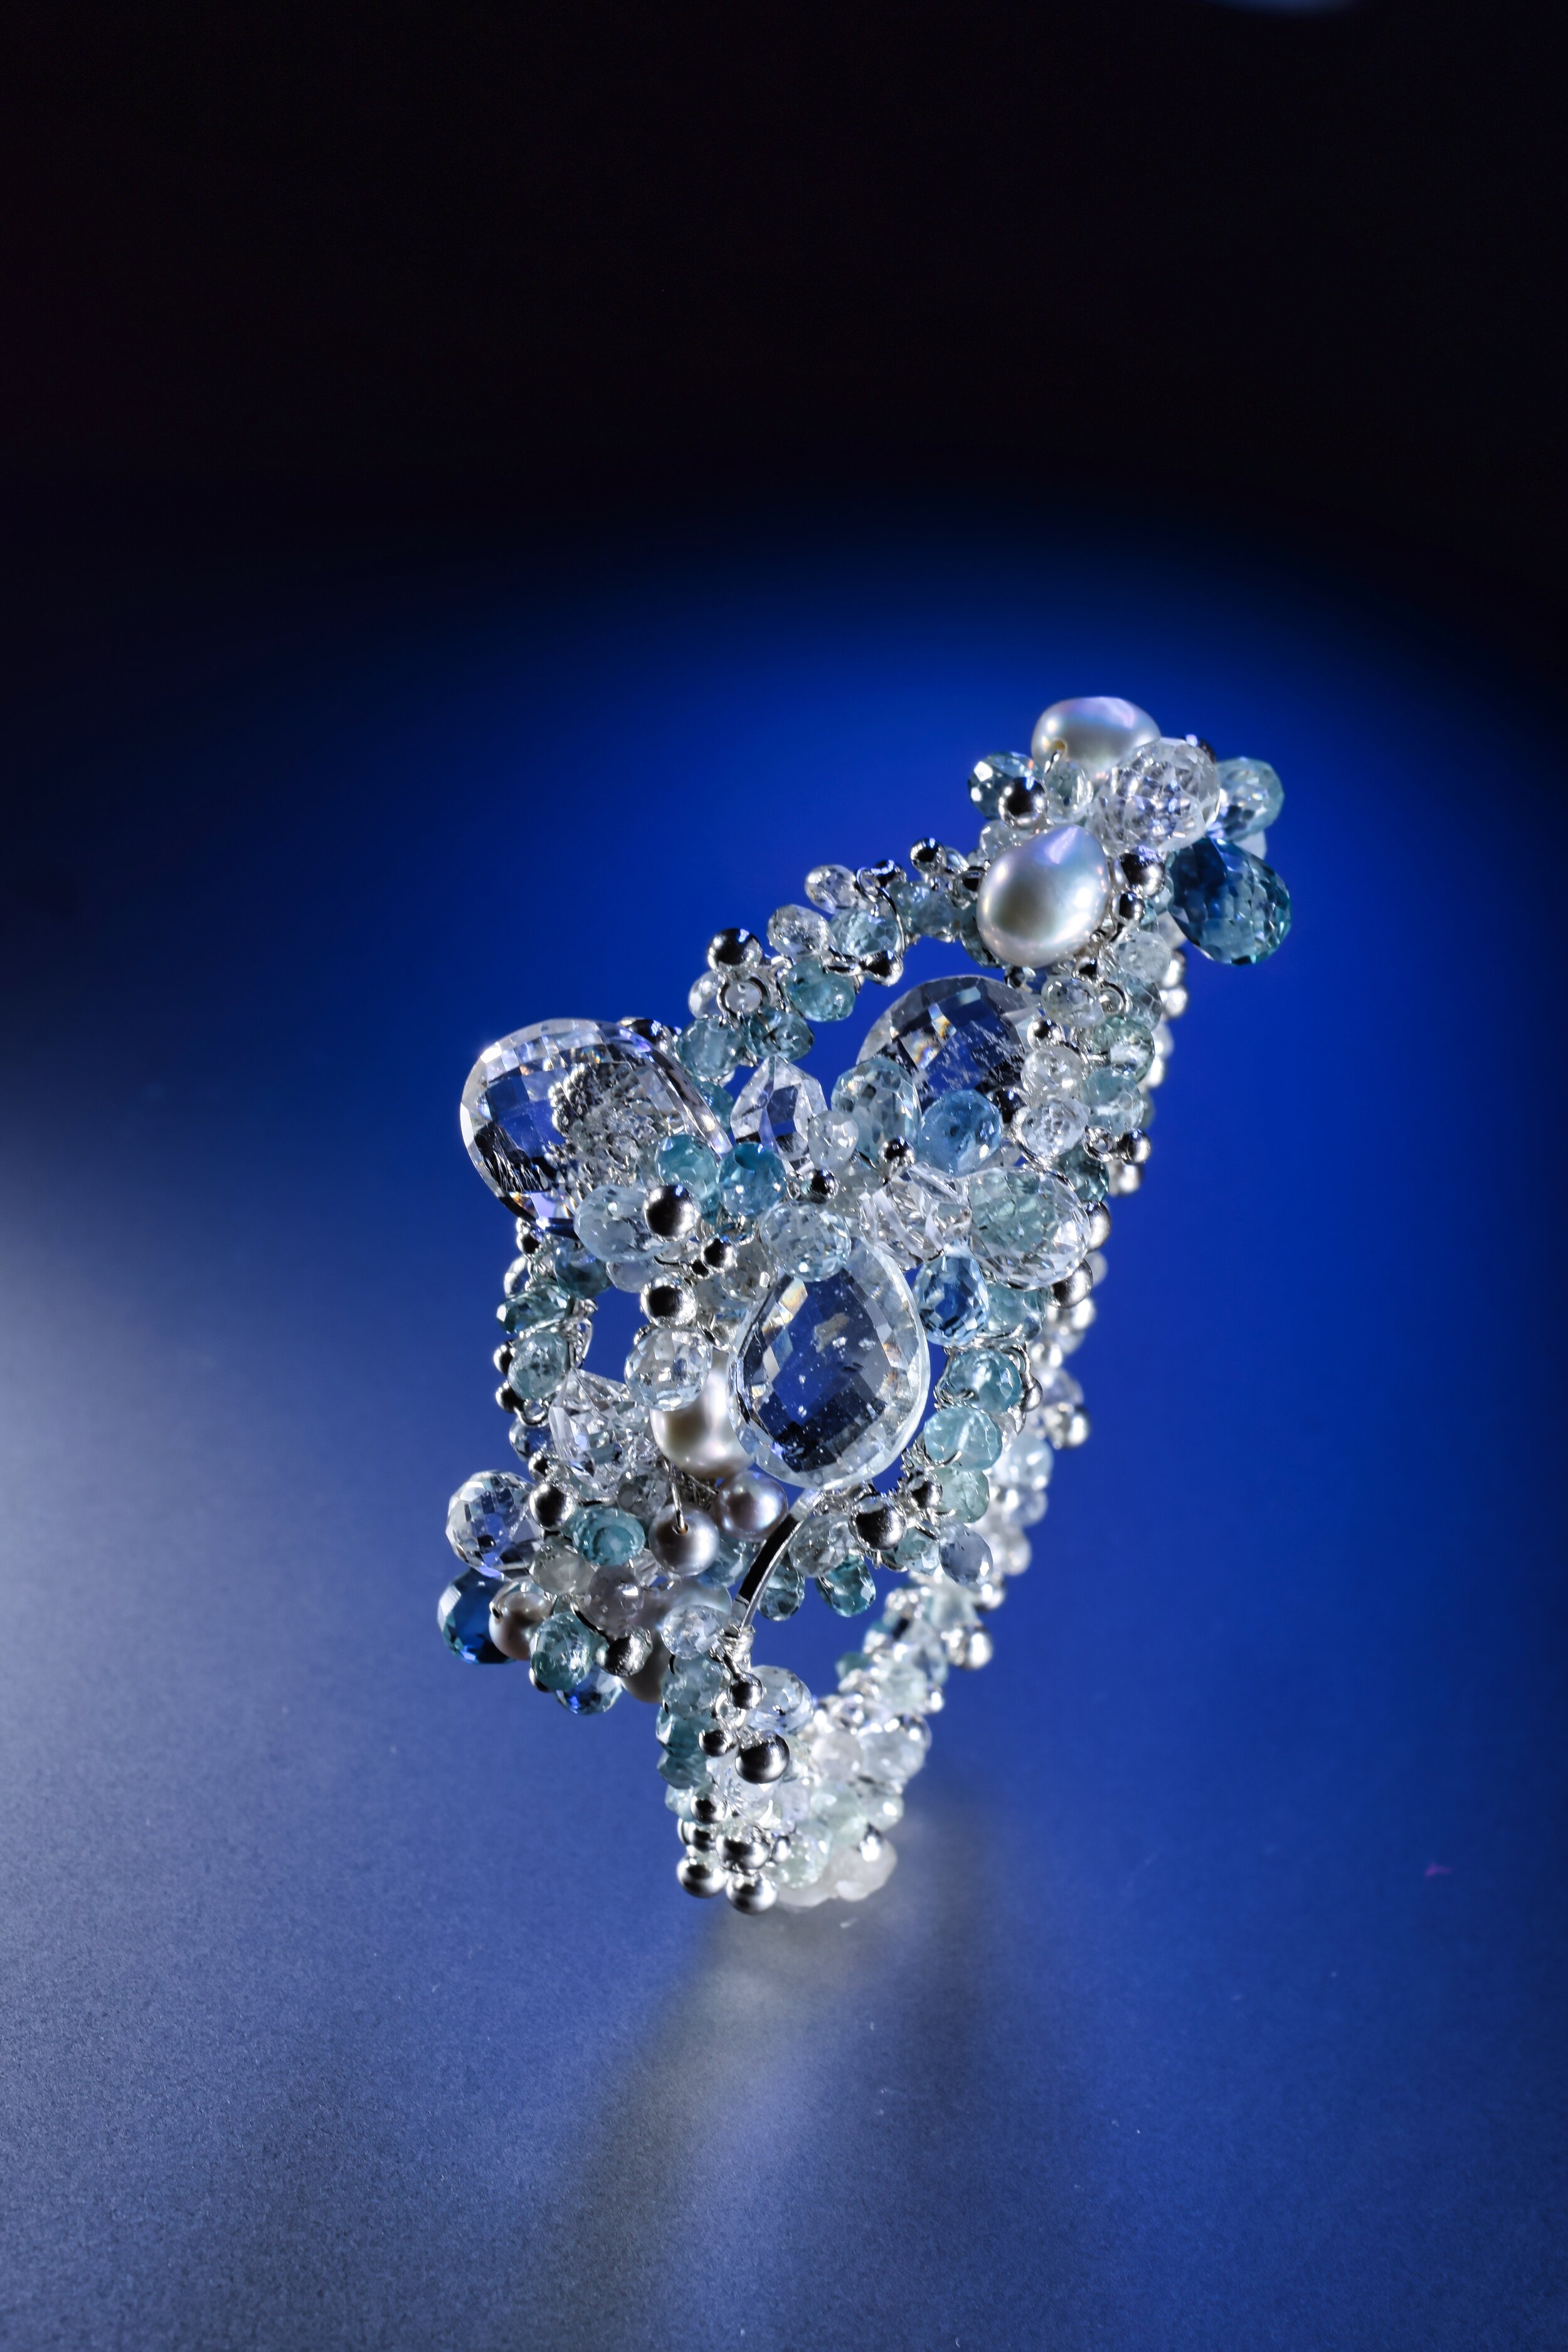 Gemstone Encrusted Bracelet with Aquamarine and Zircon